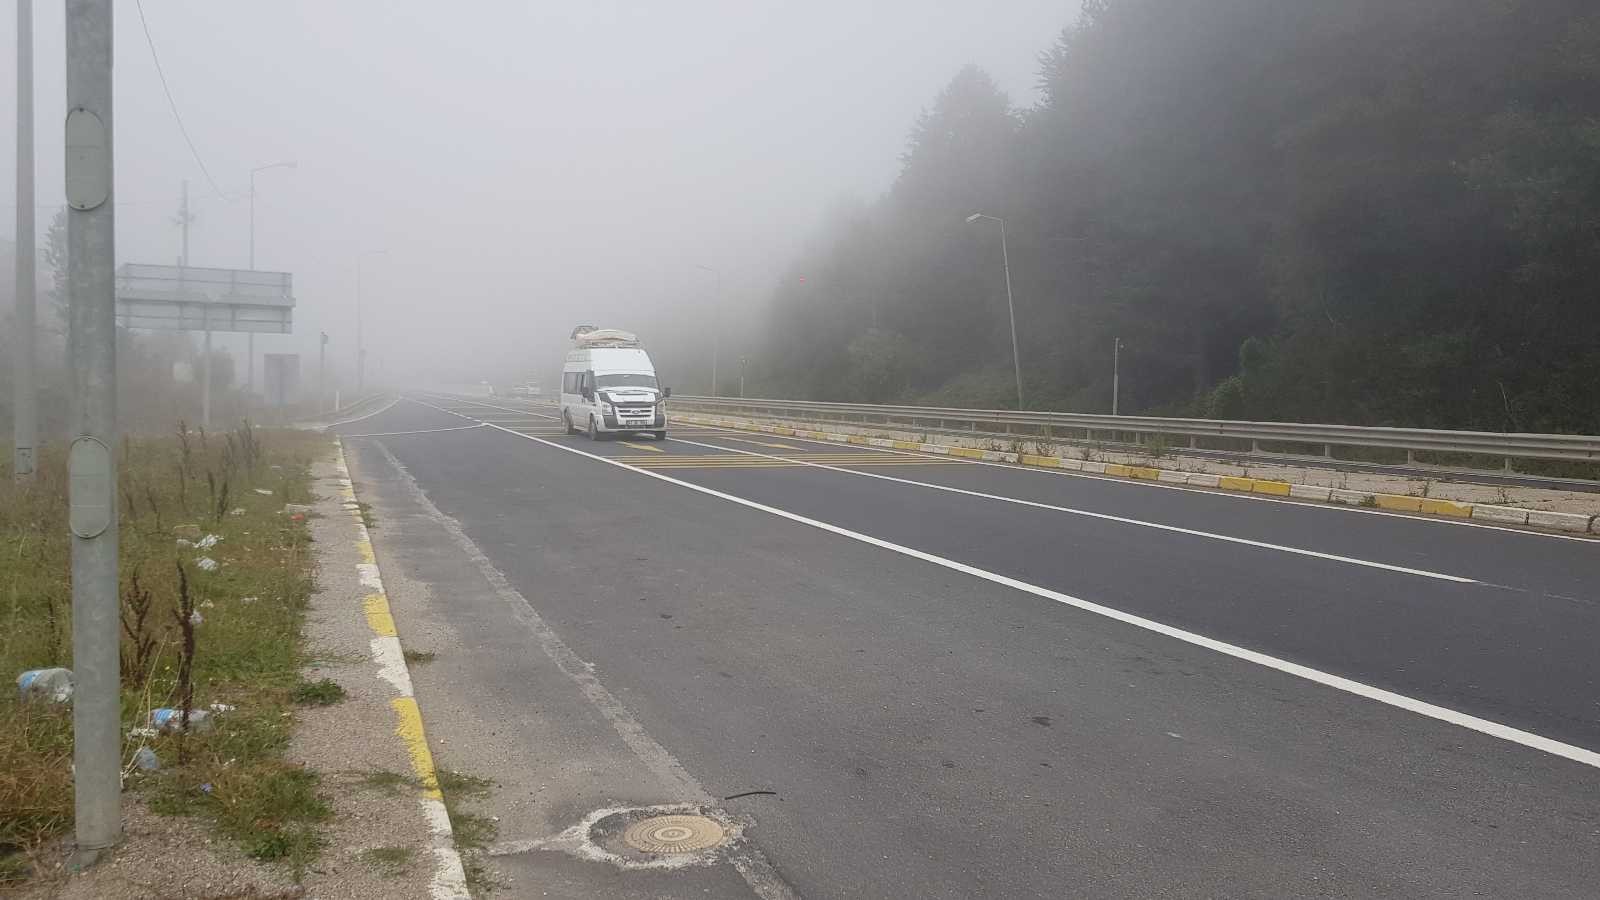 Bolu Dağı sisle kaplandı, görüş mesafesi 30 metreye düştü #bolu